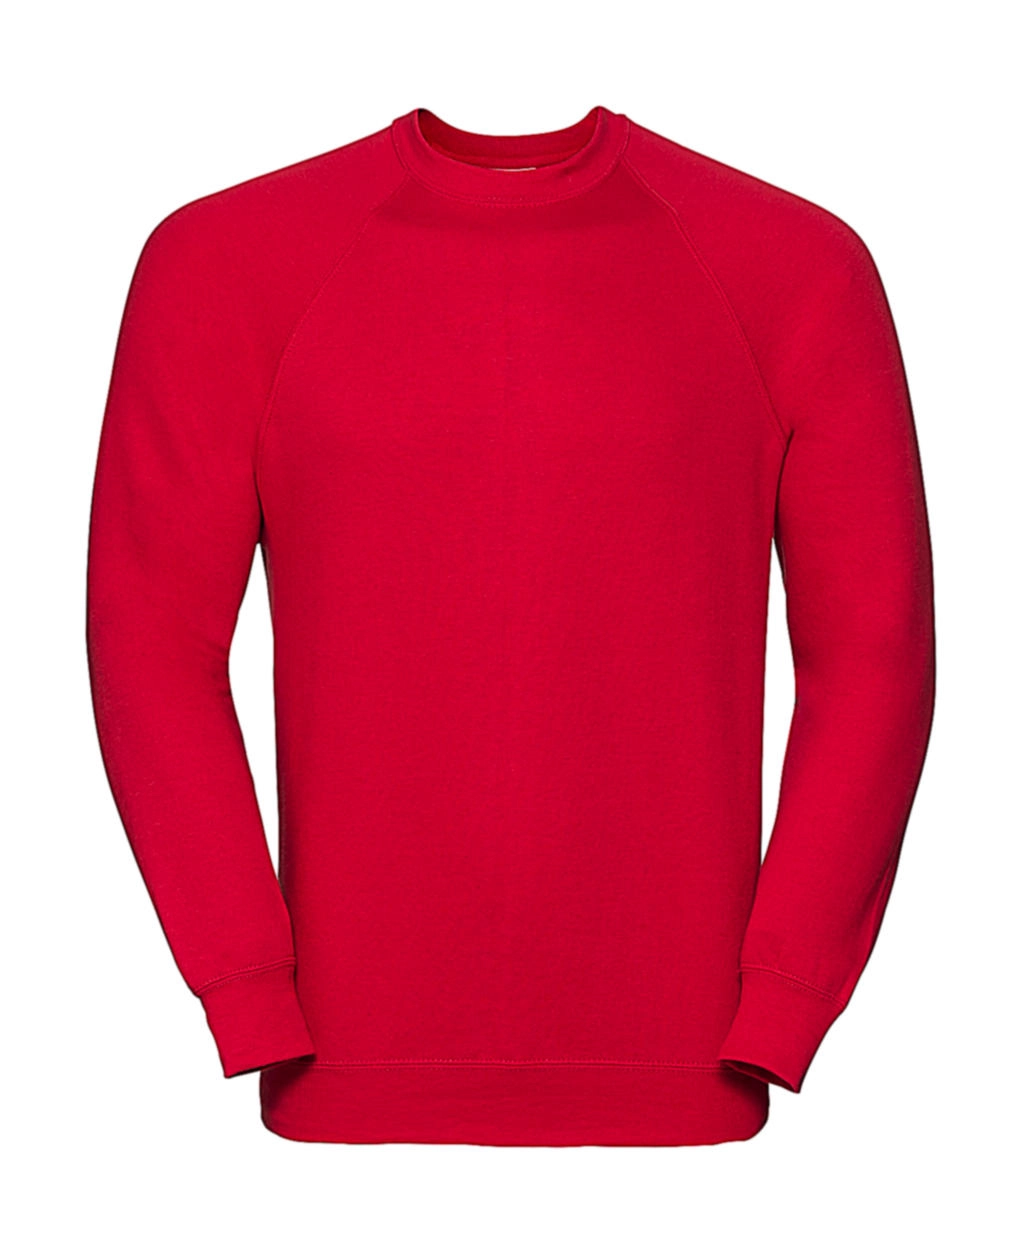 Classic Raglan Sweatshirt zum Besticken und Bedrucken in der Farbe Classic Red mit Ihren Logo, Schriftzug oder Motiv.